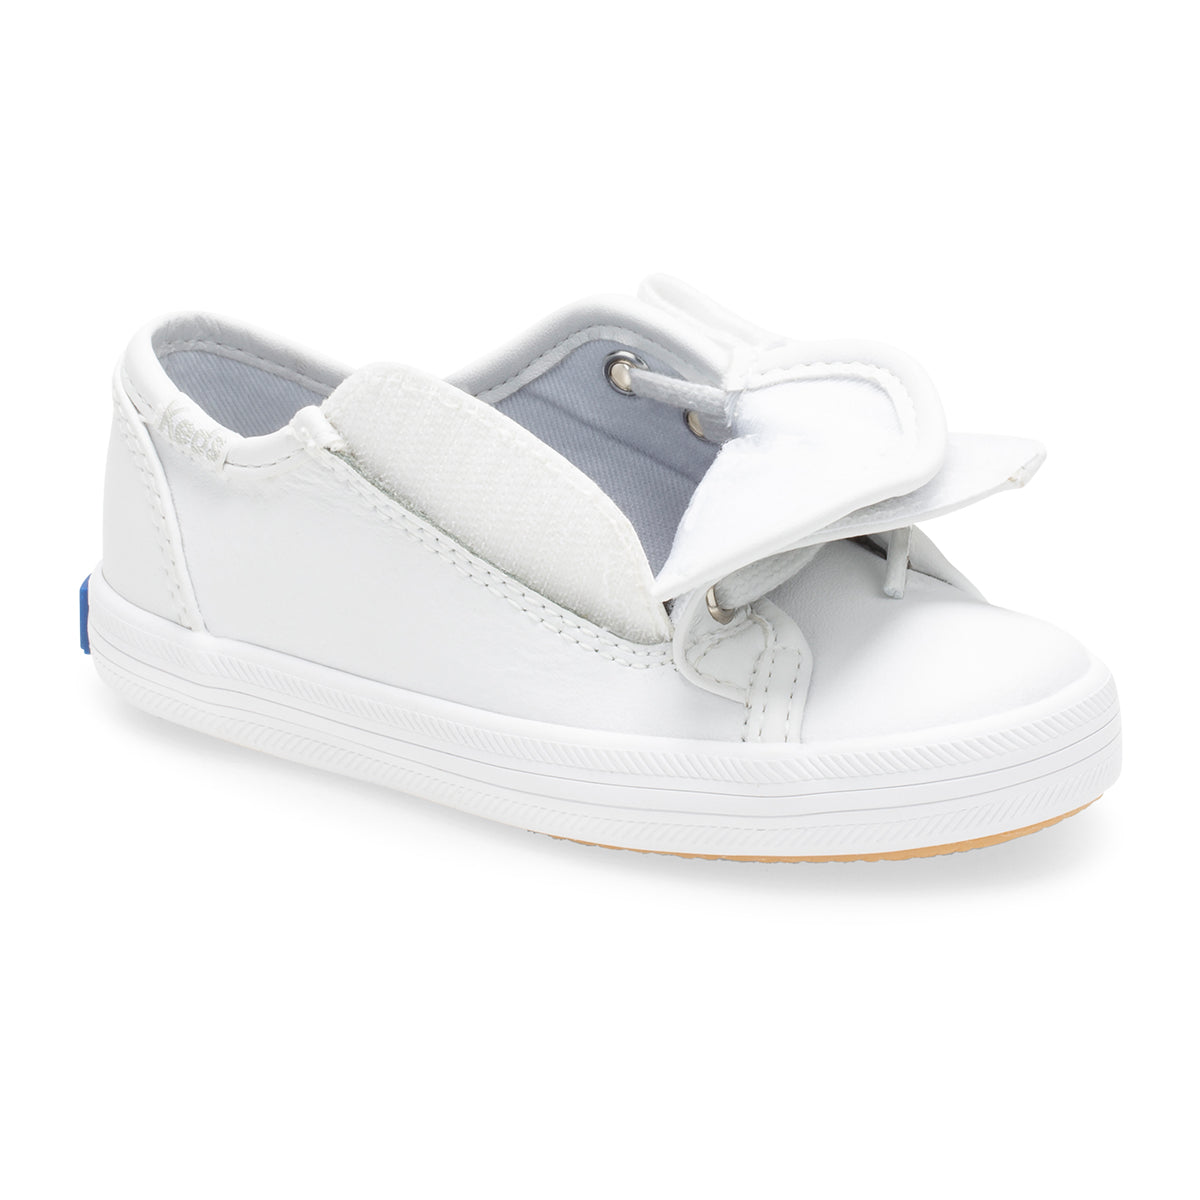 Keds Little Kid's Kickstart Jr. Leather Sneaker White | KL160526